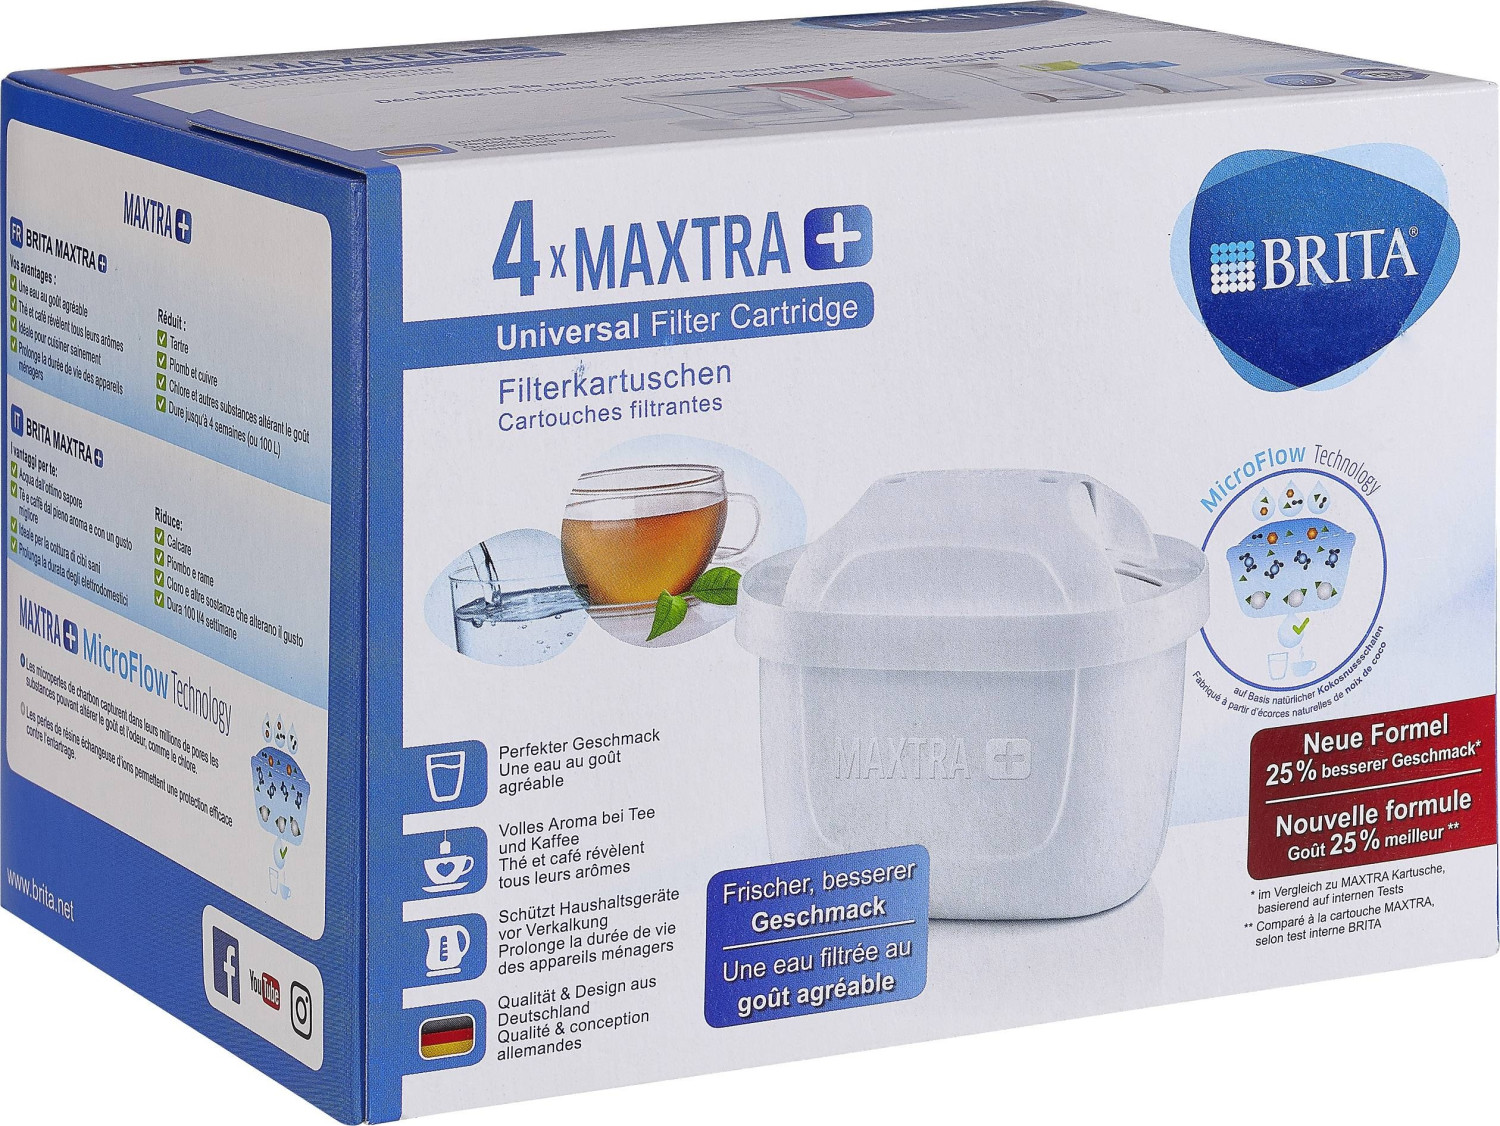 Cartouches Maxtra+ pour carafe filtrante x5 - BRITA 